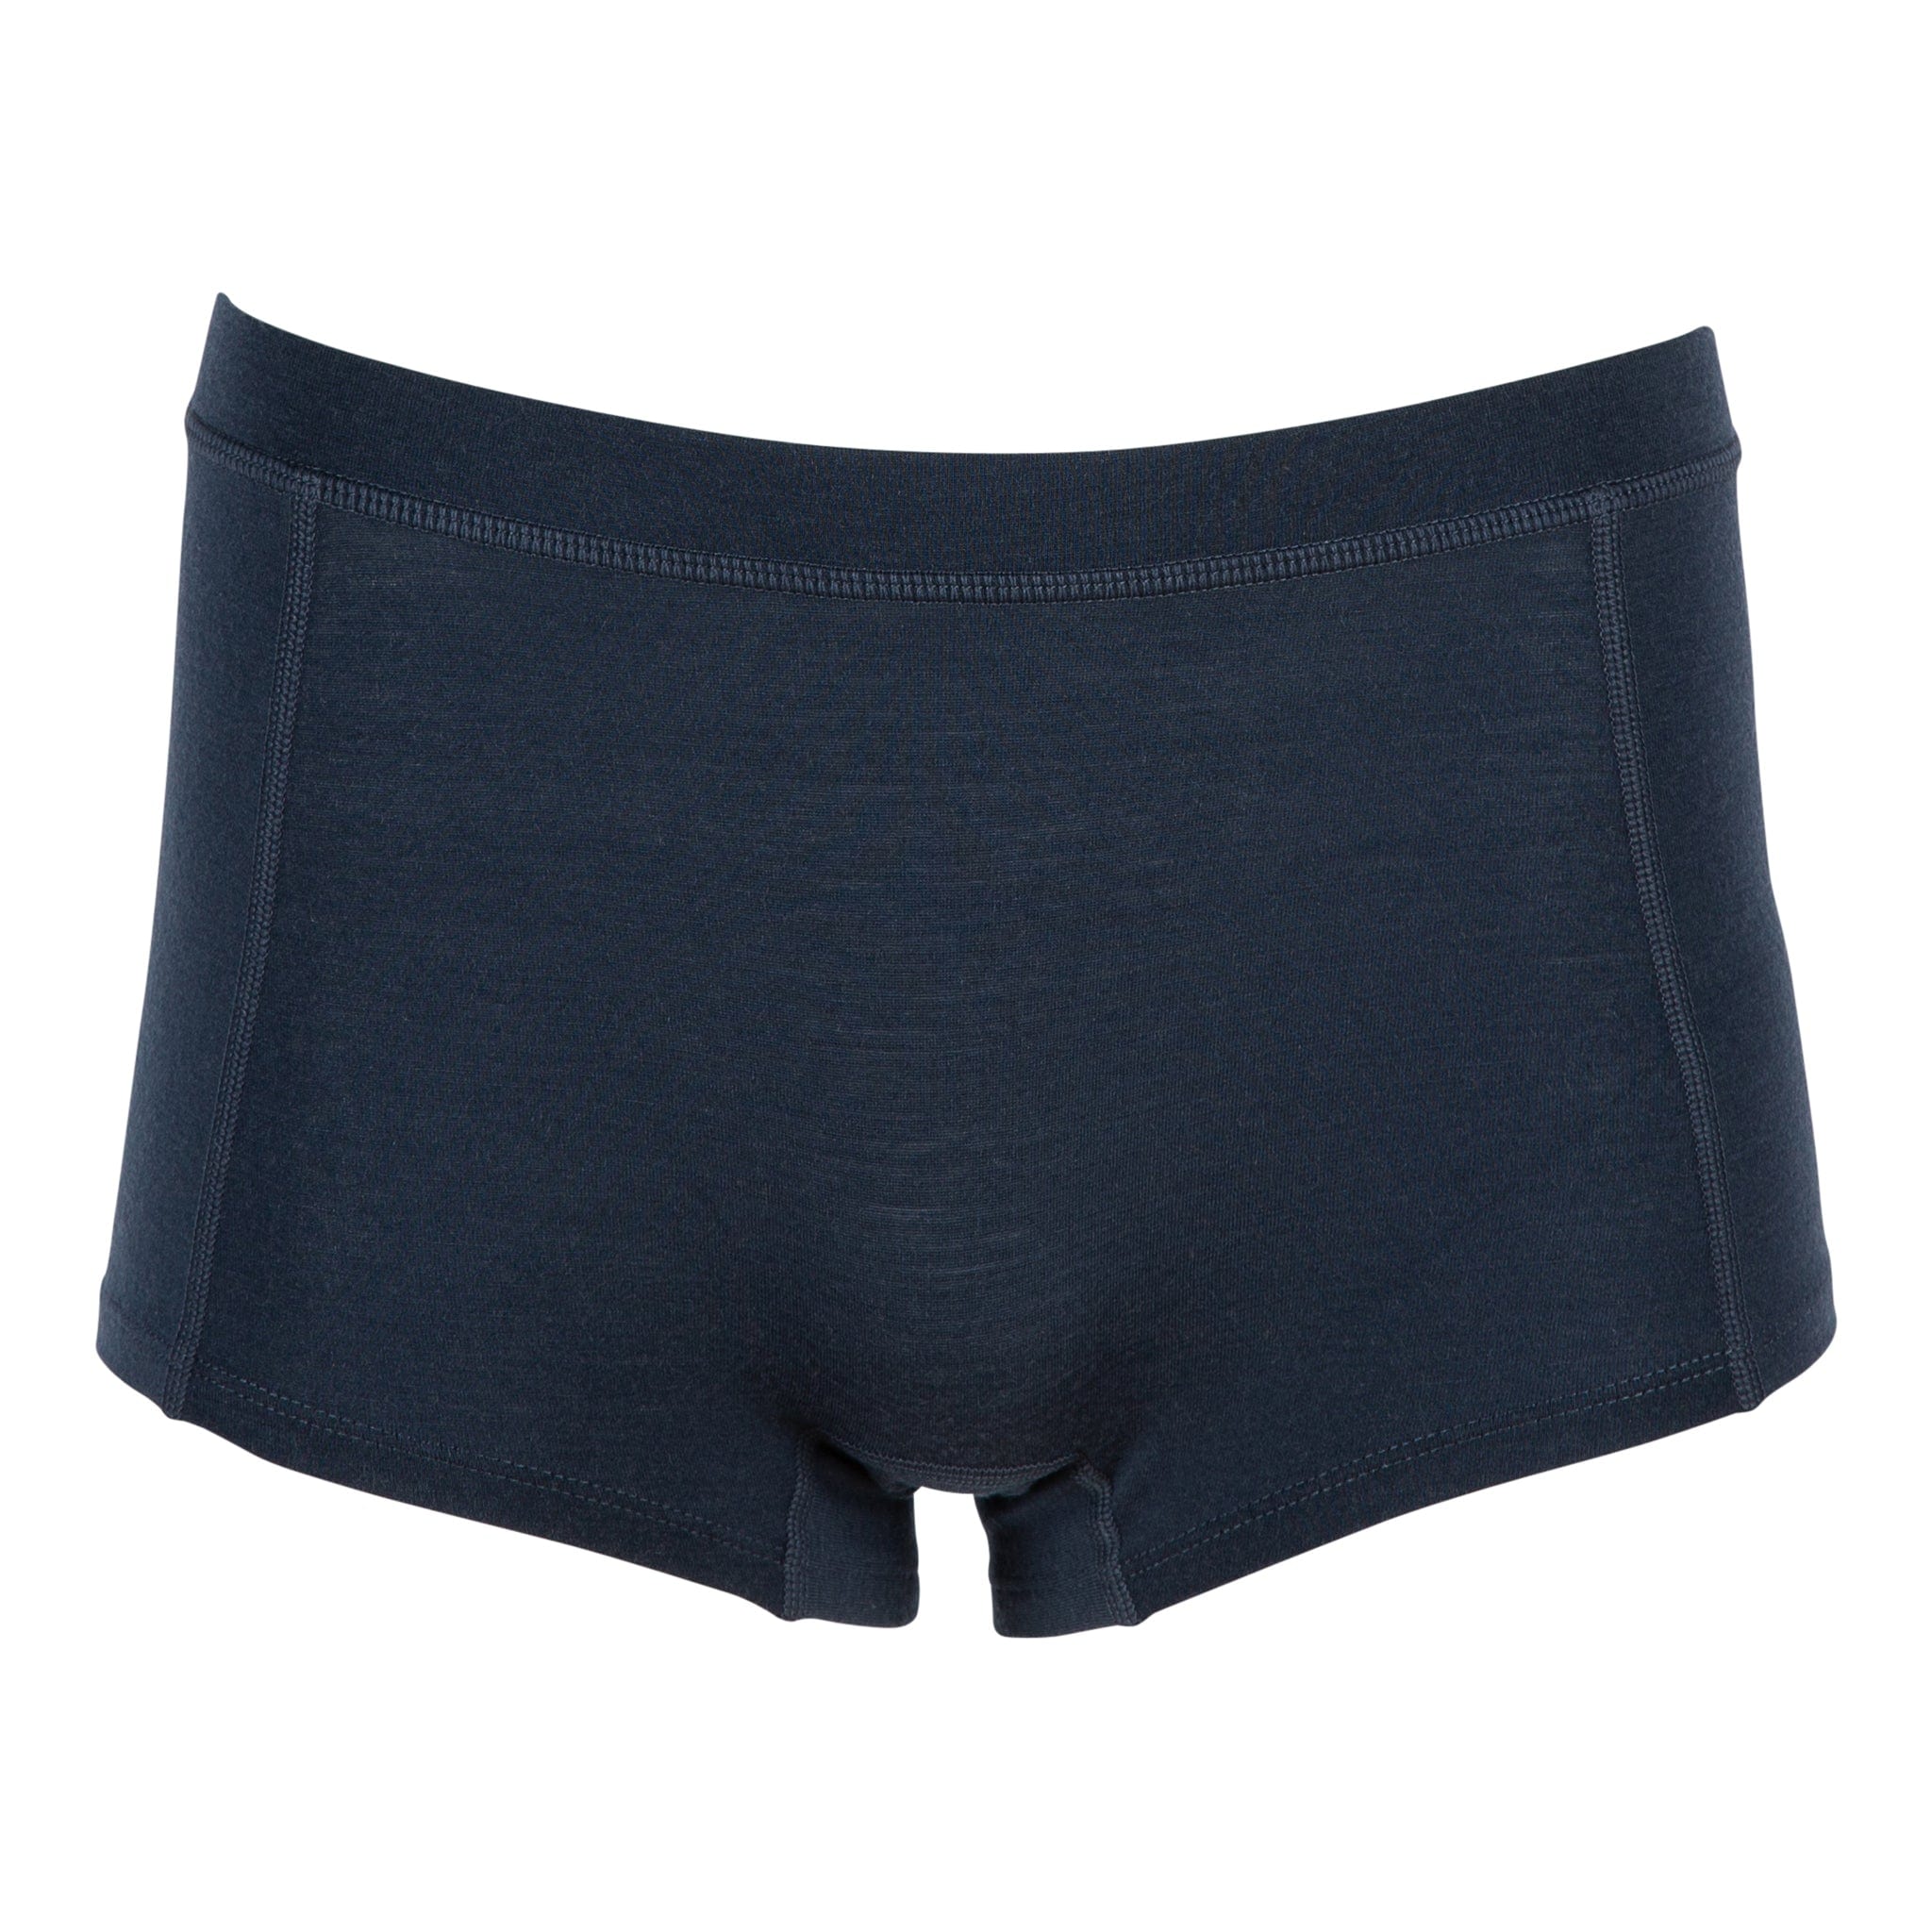 Outerspace Women's Ridge Boy Shorts Underwear